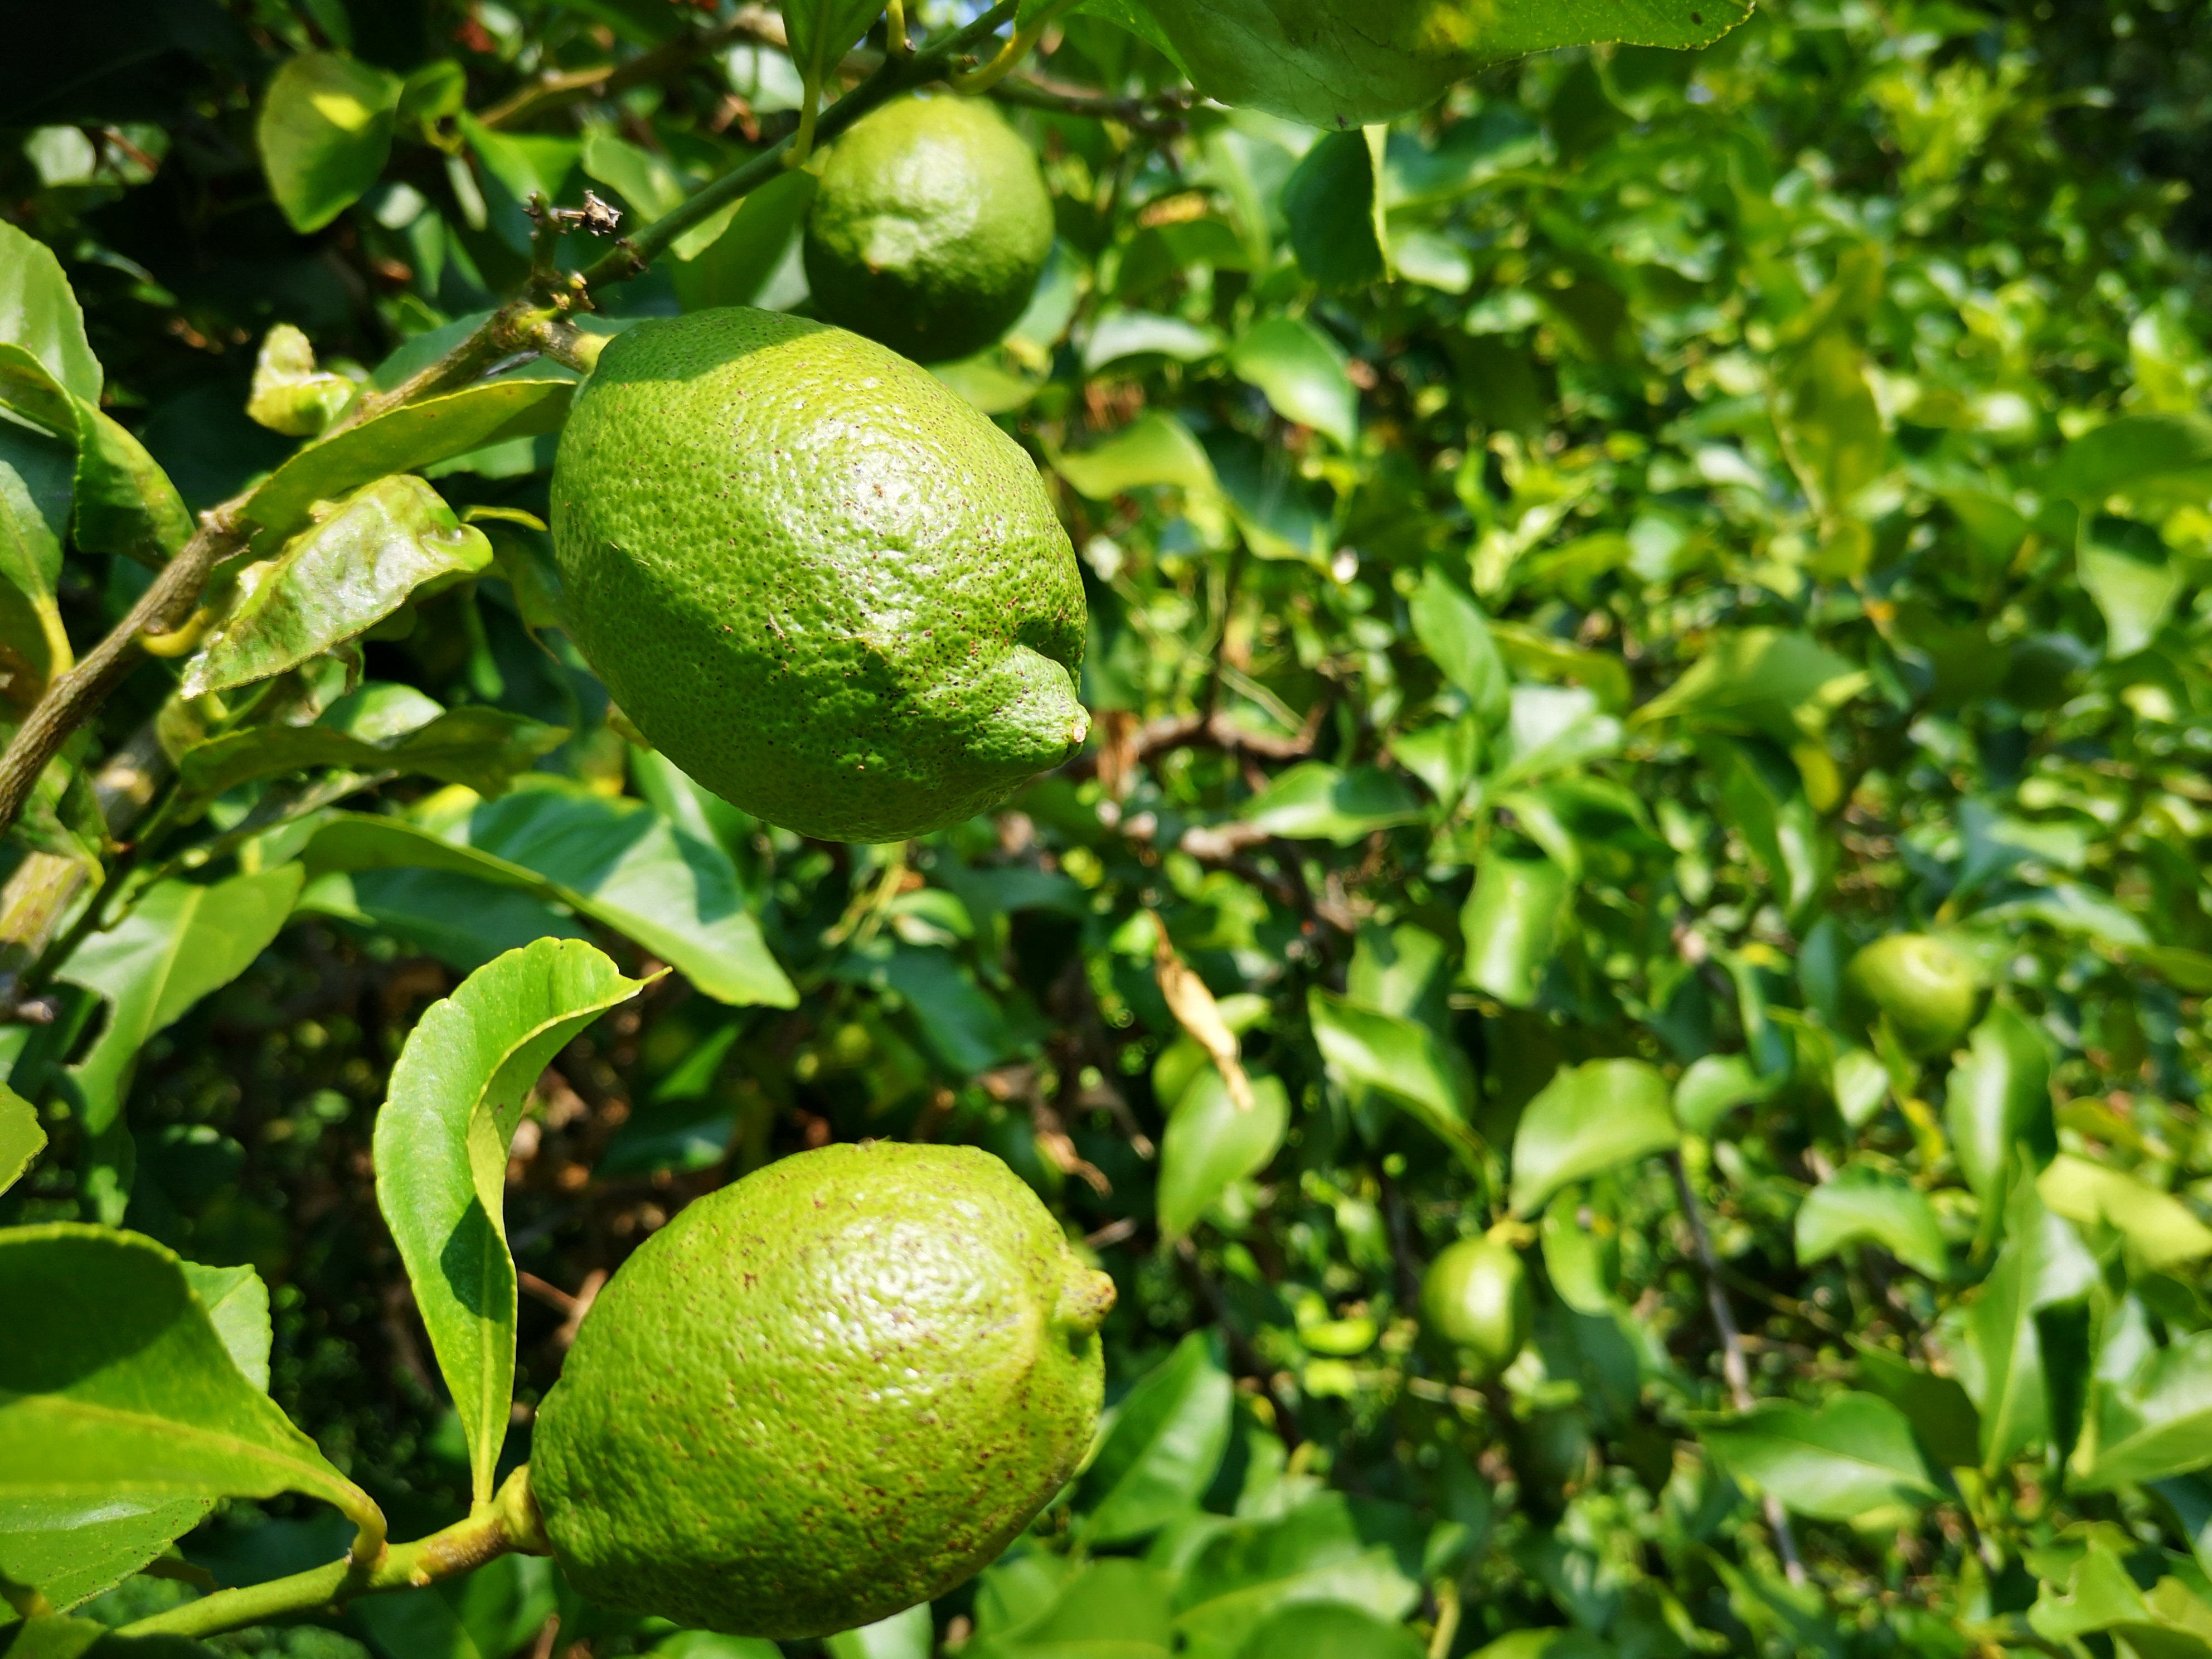 2020.08.31　無農薬栽培グリーンレモン収穫開始します!!